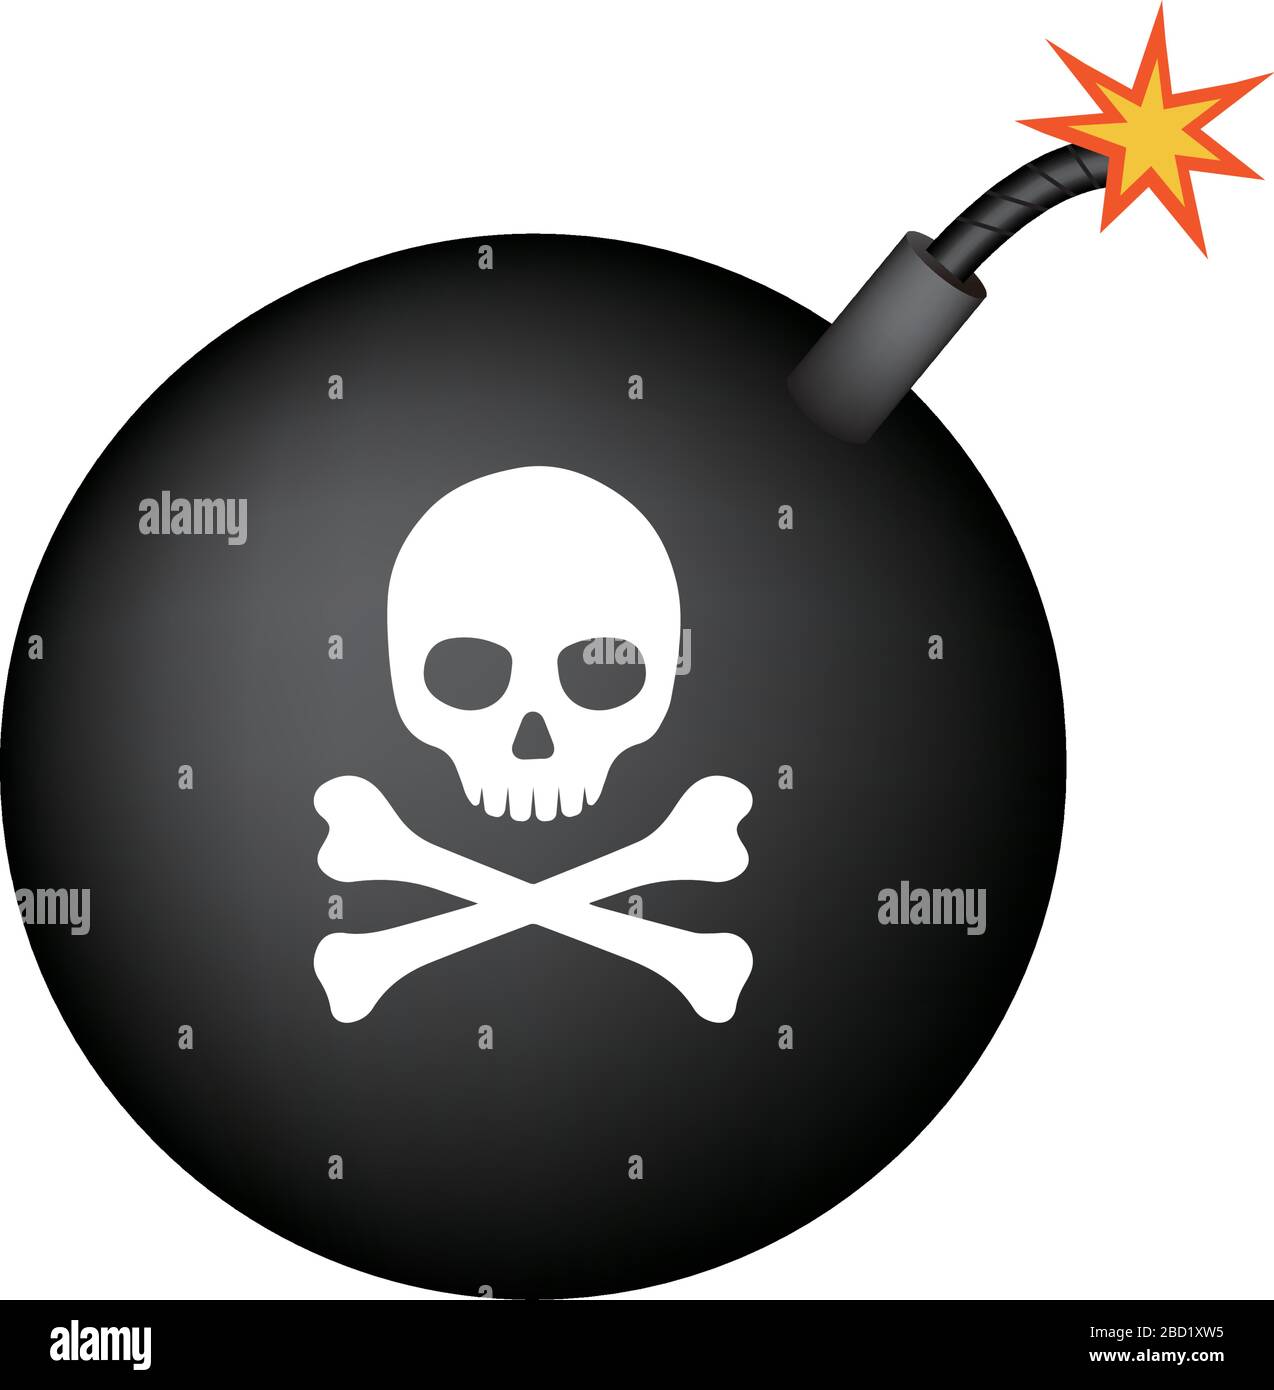 simple bomb illustration / skull mark Stock Vector